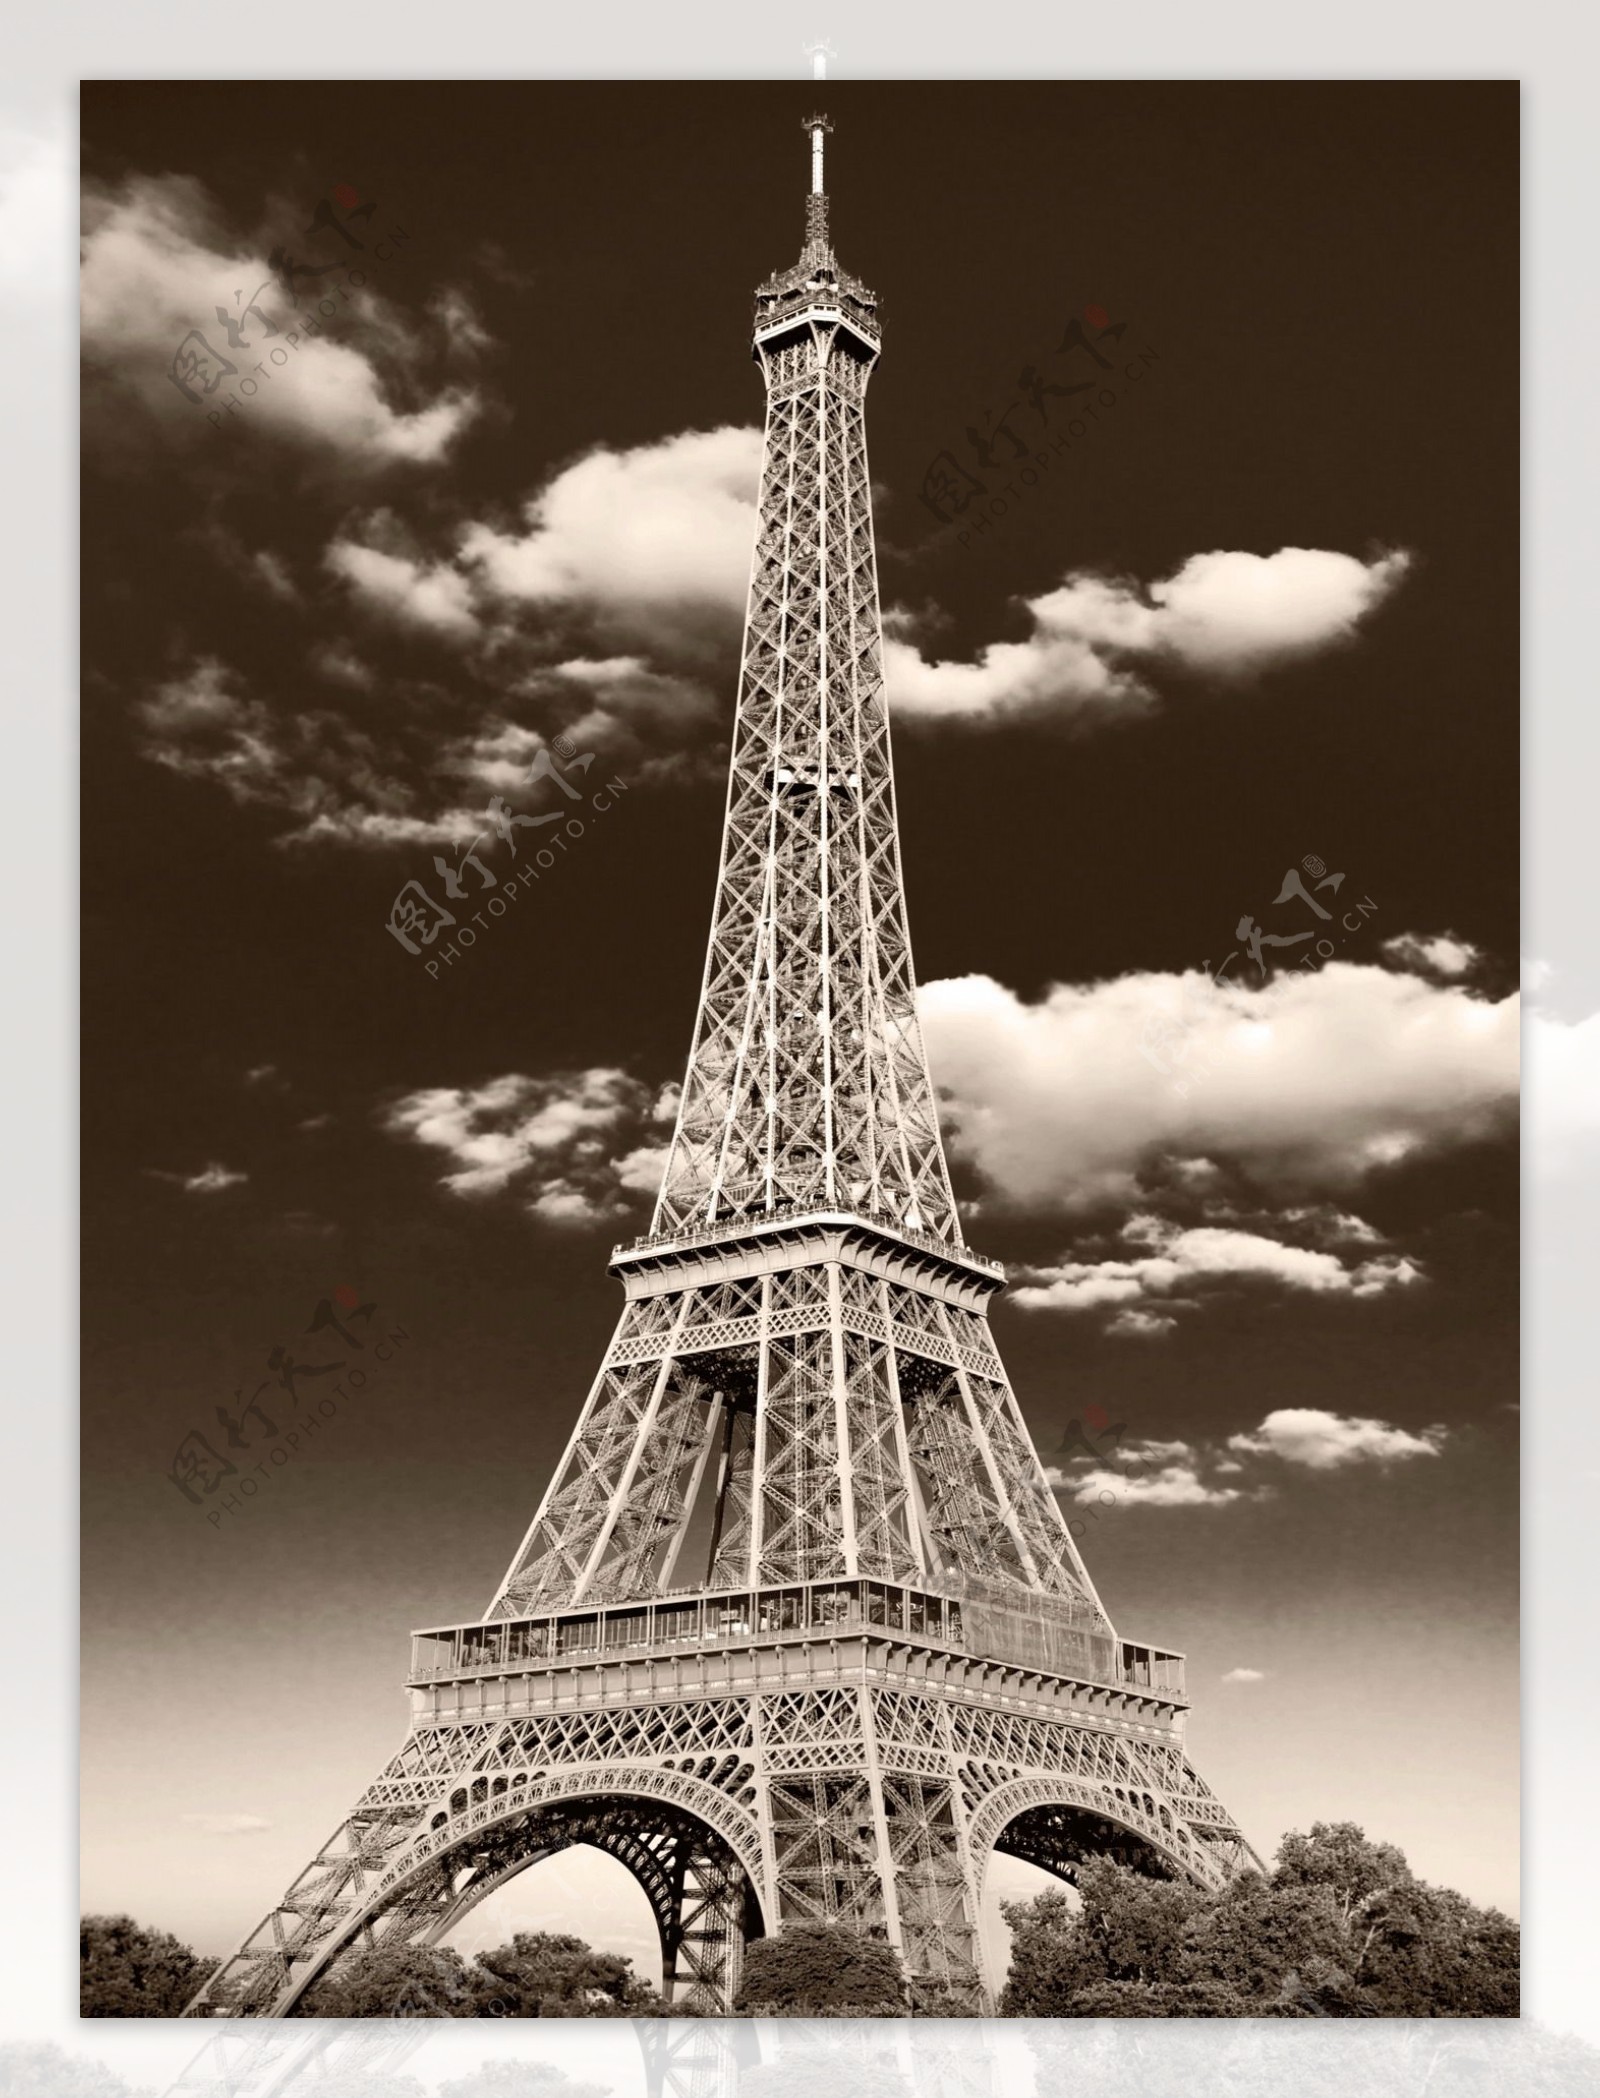 【携程攻略】埃菲尔铁塔门票,巴黎埃菲尔铁塔攻略/地址/图片/门票价格